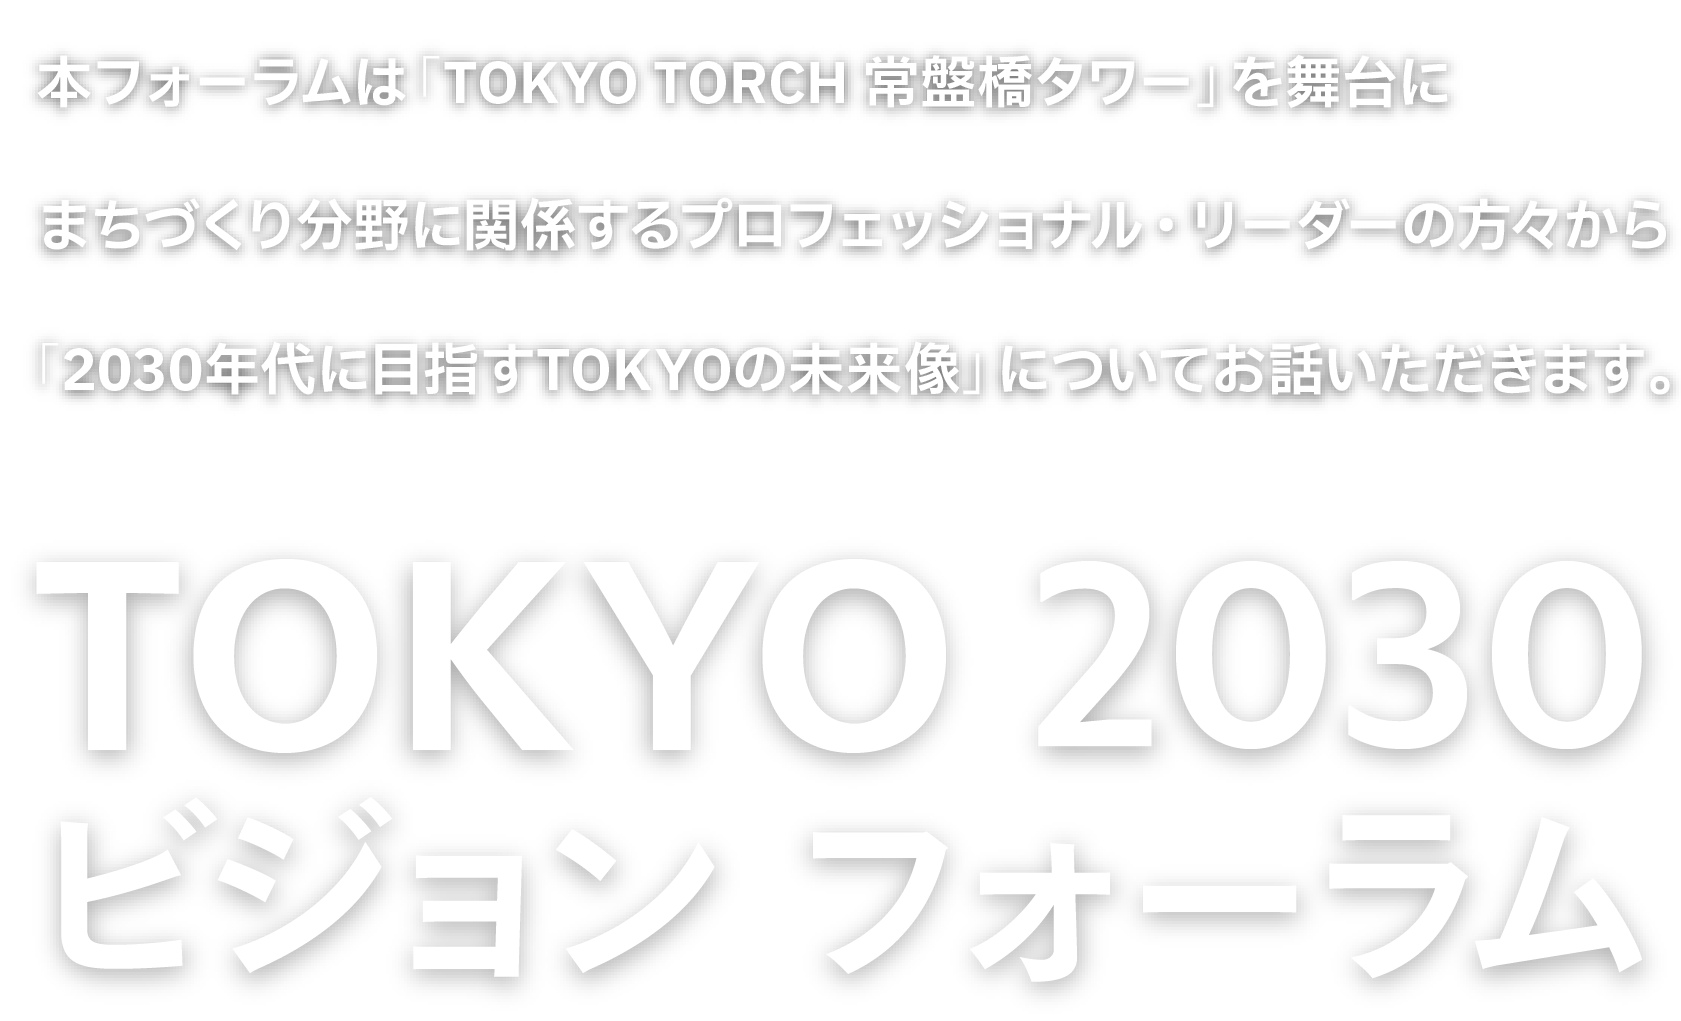 日経バリューサーチフォーラム・TOKYO2030 ビジョン フォーラム